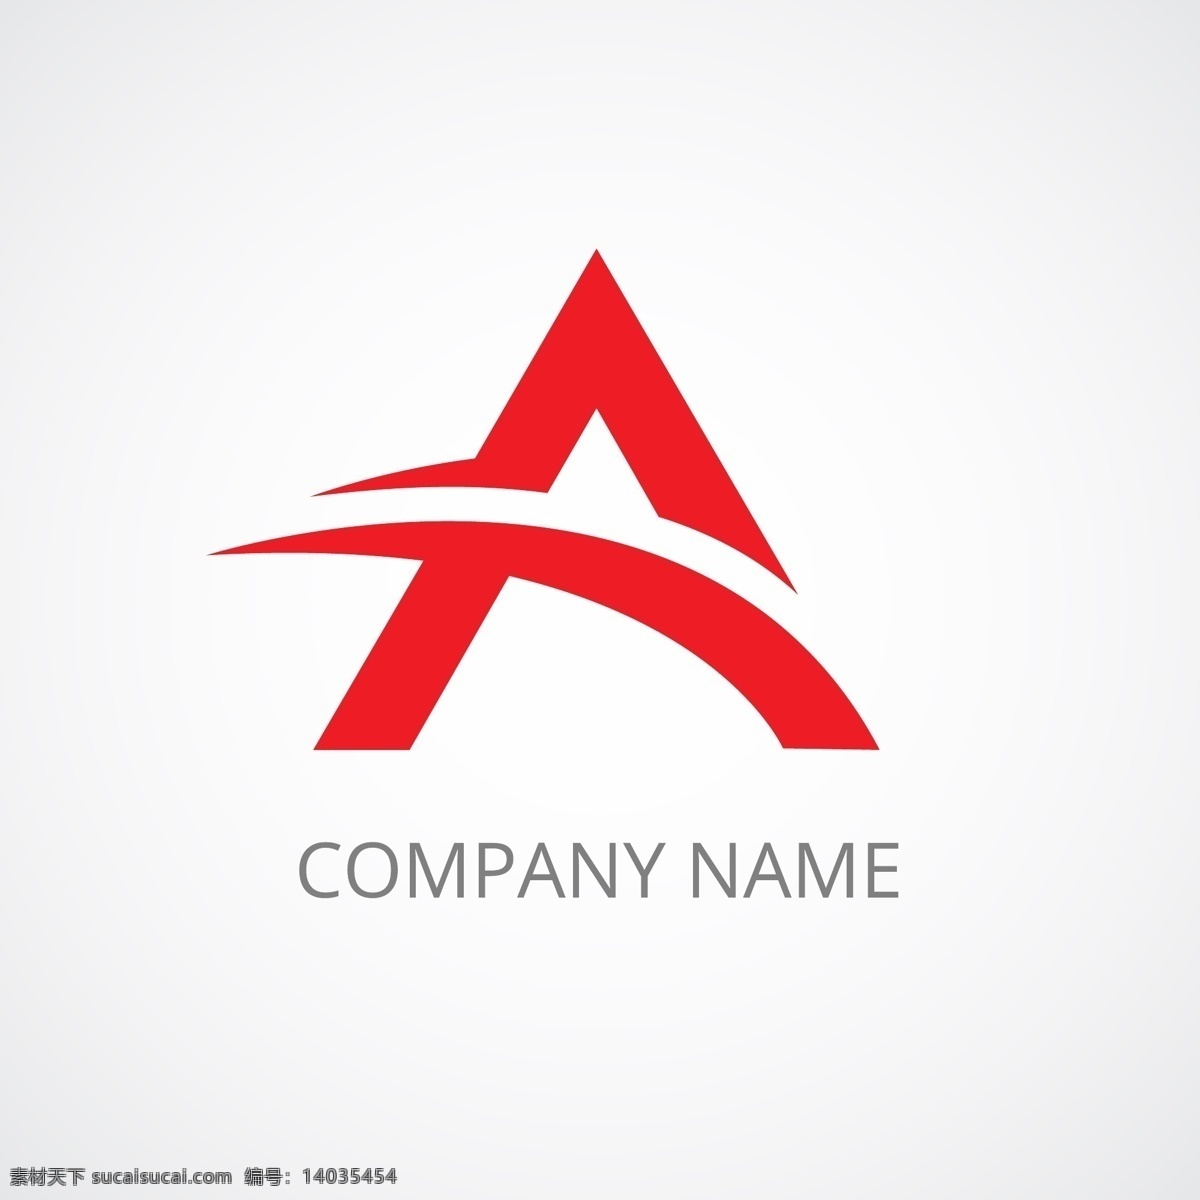 字母 造型 logo 红色 企业 标识 科技 标志 创意 广告 简约 互联网 科技logo 领域 多用途 公司 企业标识 企业logo